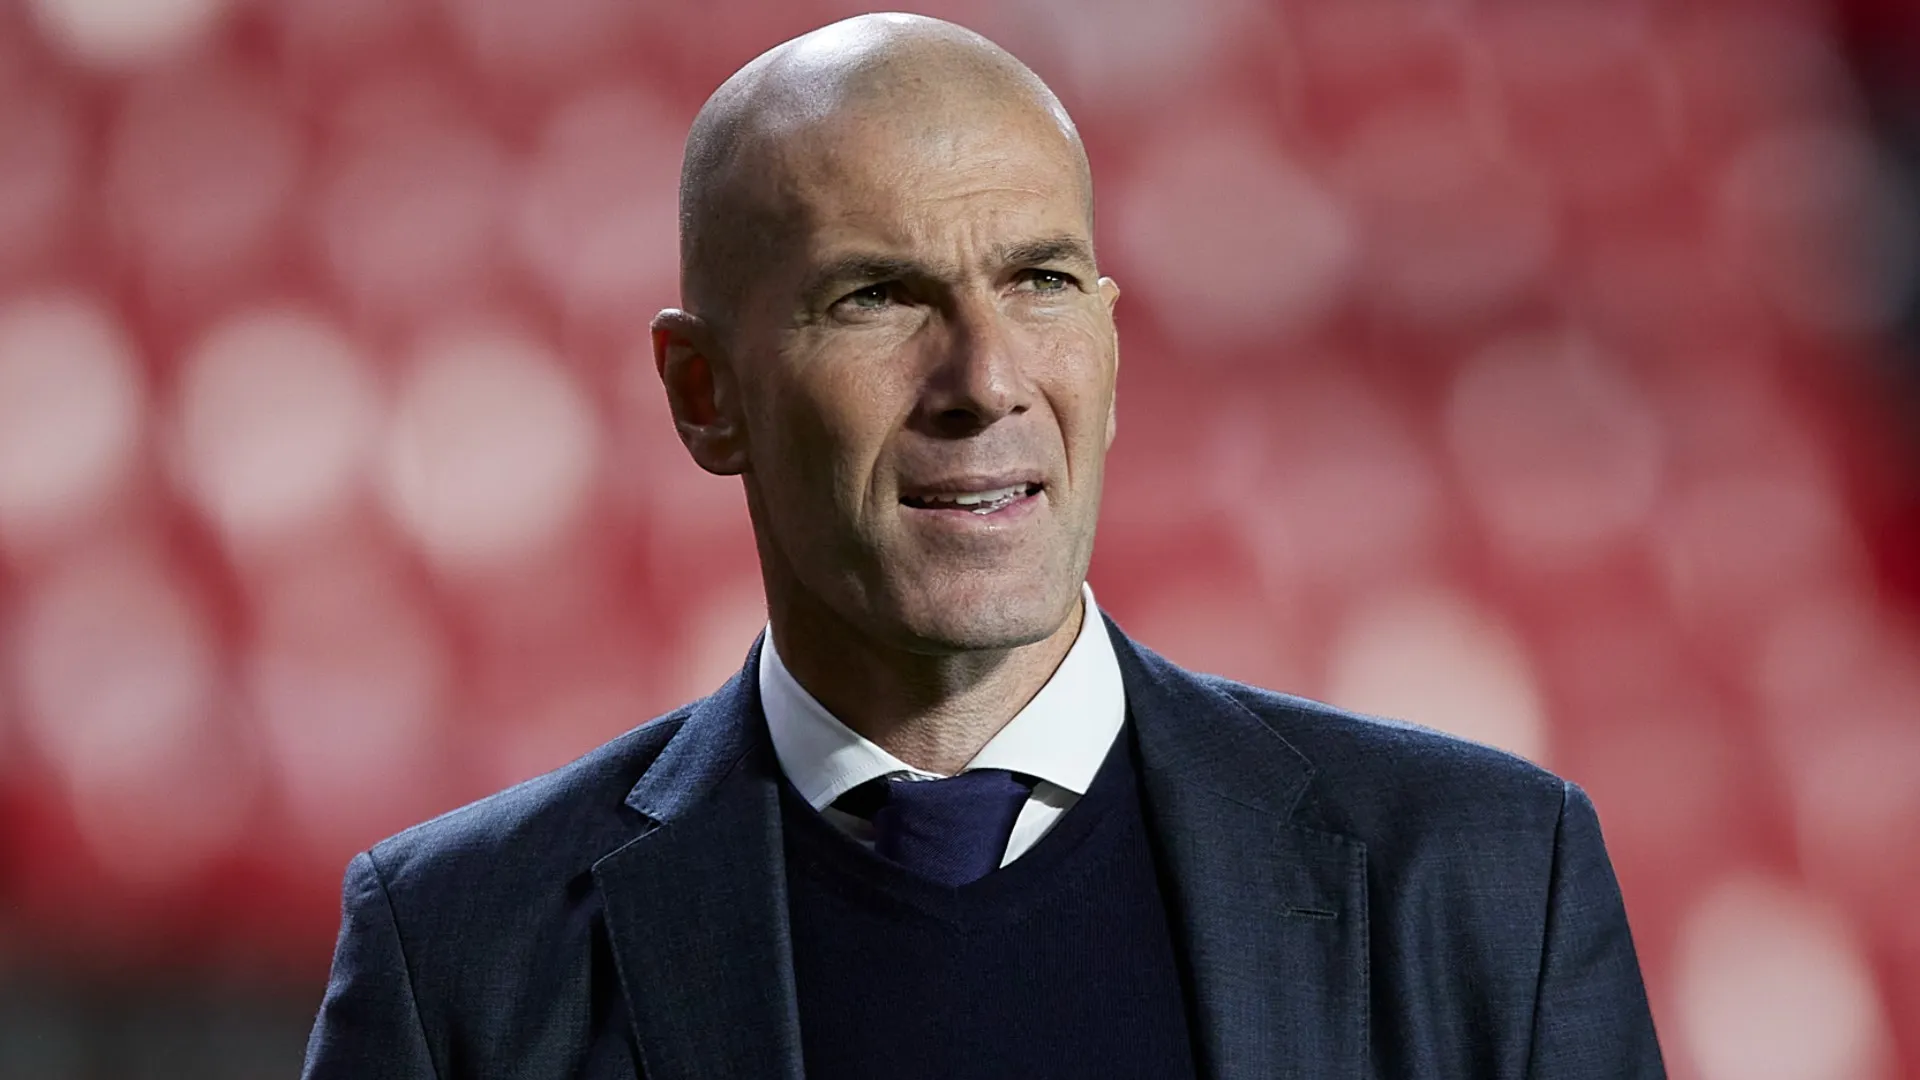 Zidane torna a parlare: “Vi svelo il momento peggiore della mia carriera”